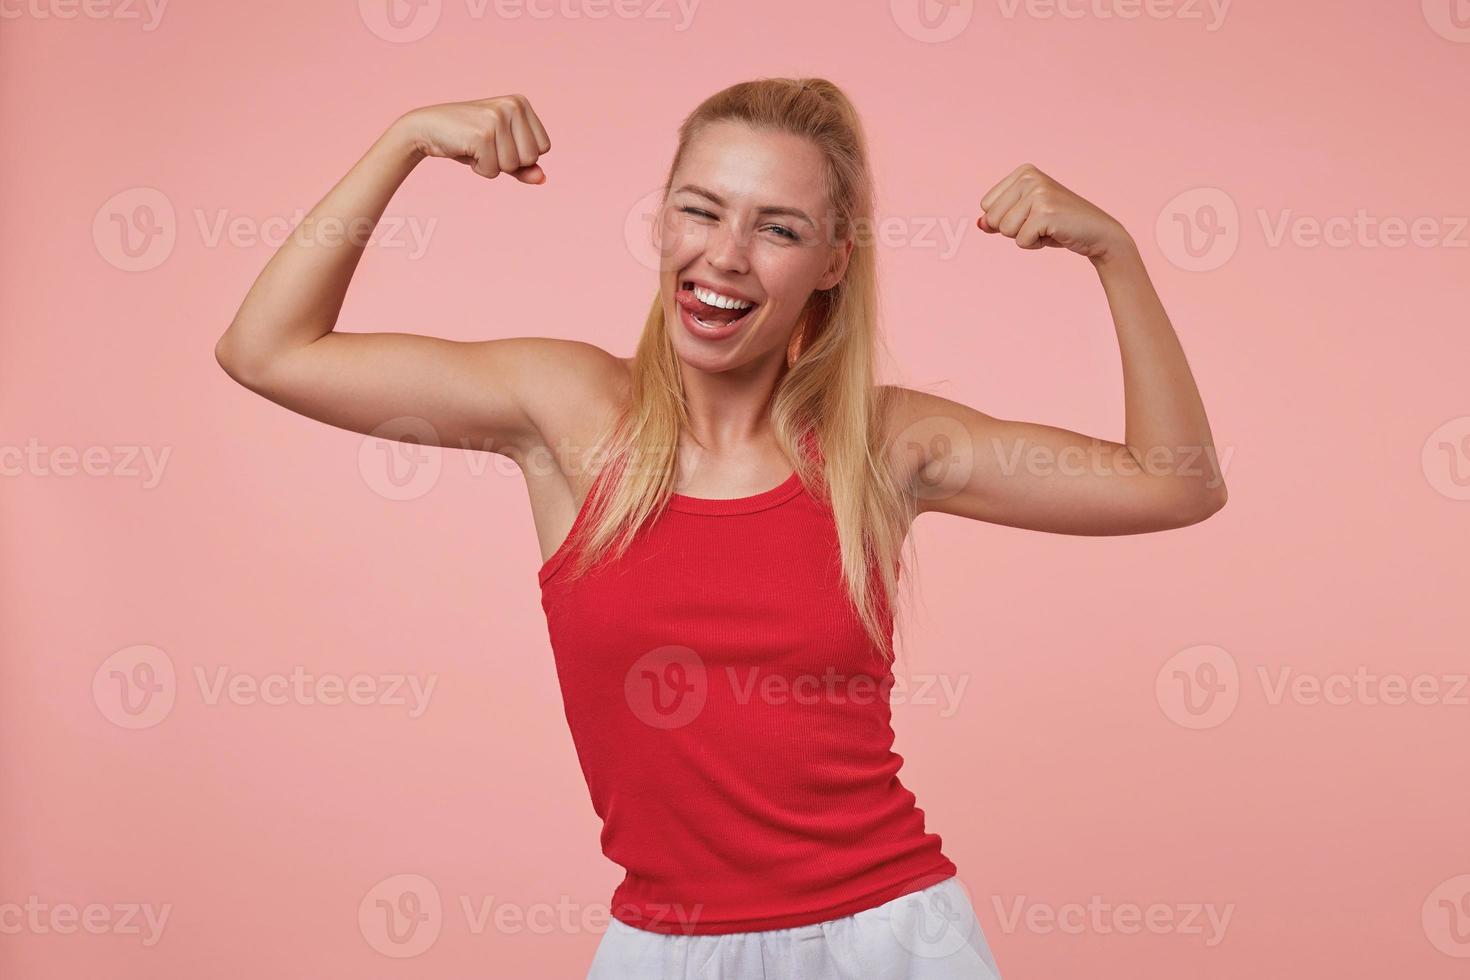 una joven alegre y de buen aspecto con un peinado informal que muestra sus manos deportivas, sonriendo ampliamente, mostrando la lengua y guiñando un ojo a la cámara, aislada en un fondo rosado foto